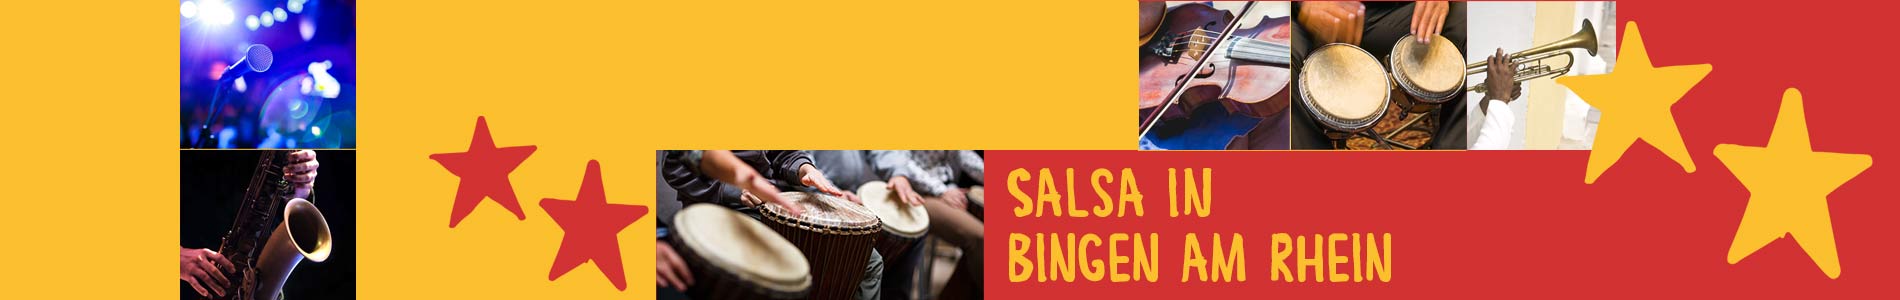 Salsa in Bingen am Rhein – Salsa lernen und tanzen, Tanzkurse, Partys, Veranstaltungen